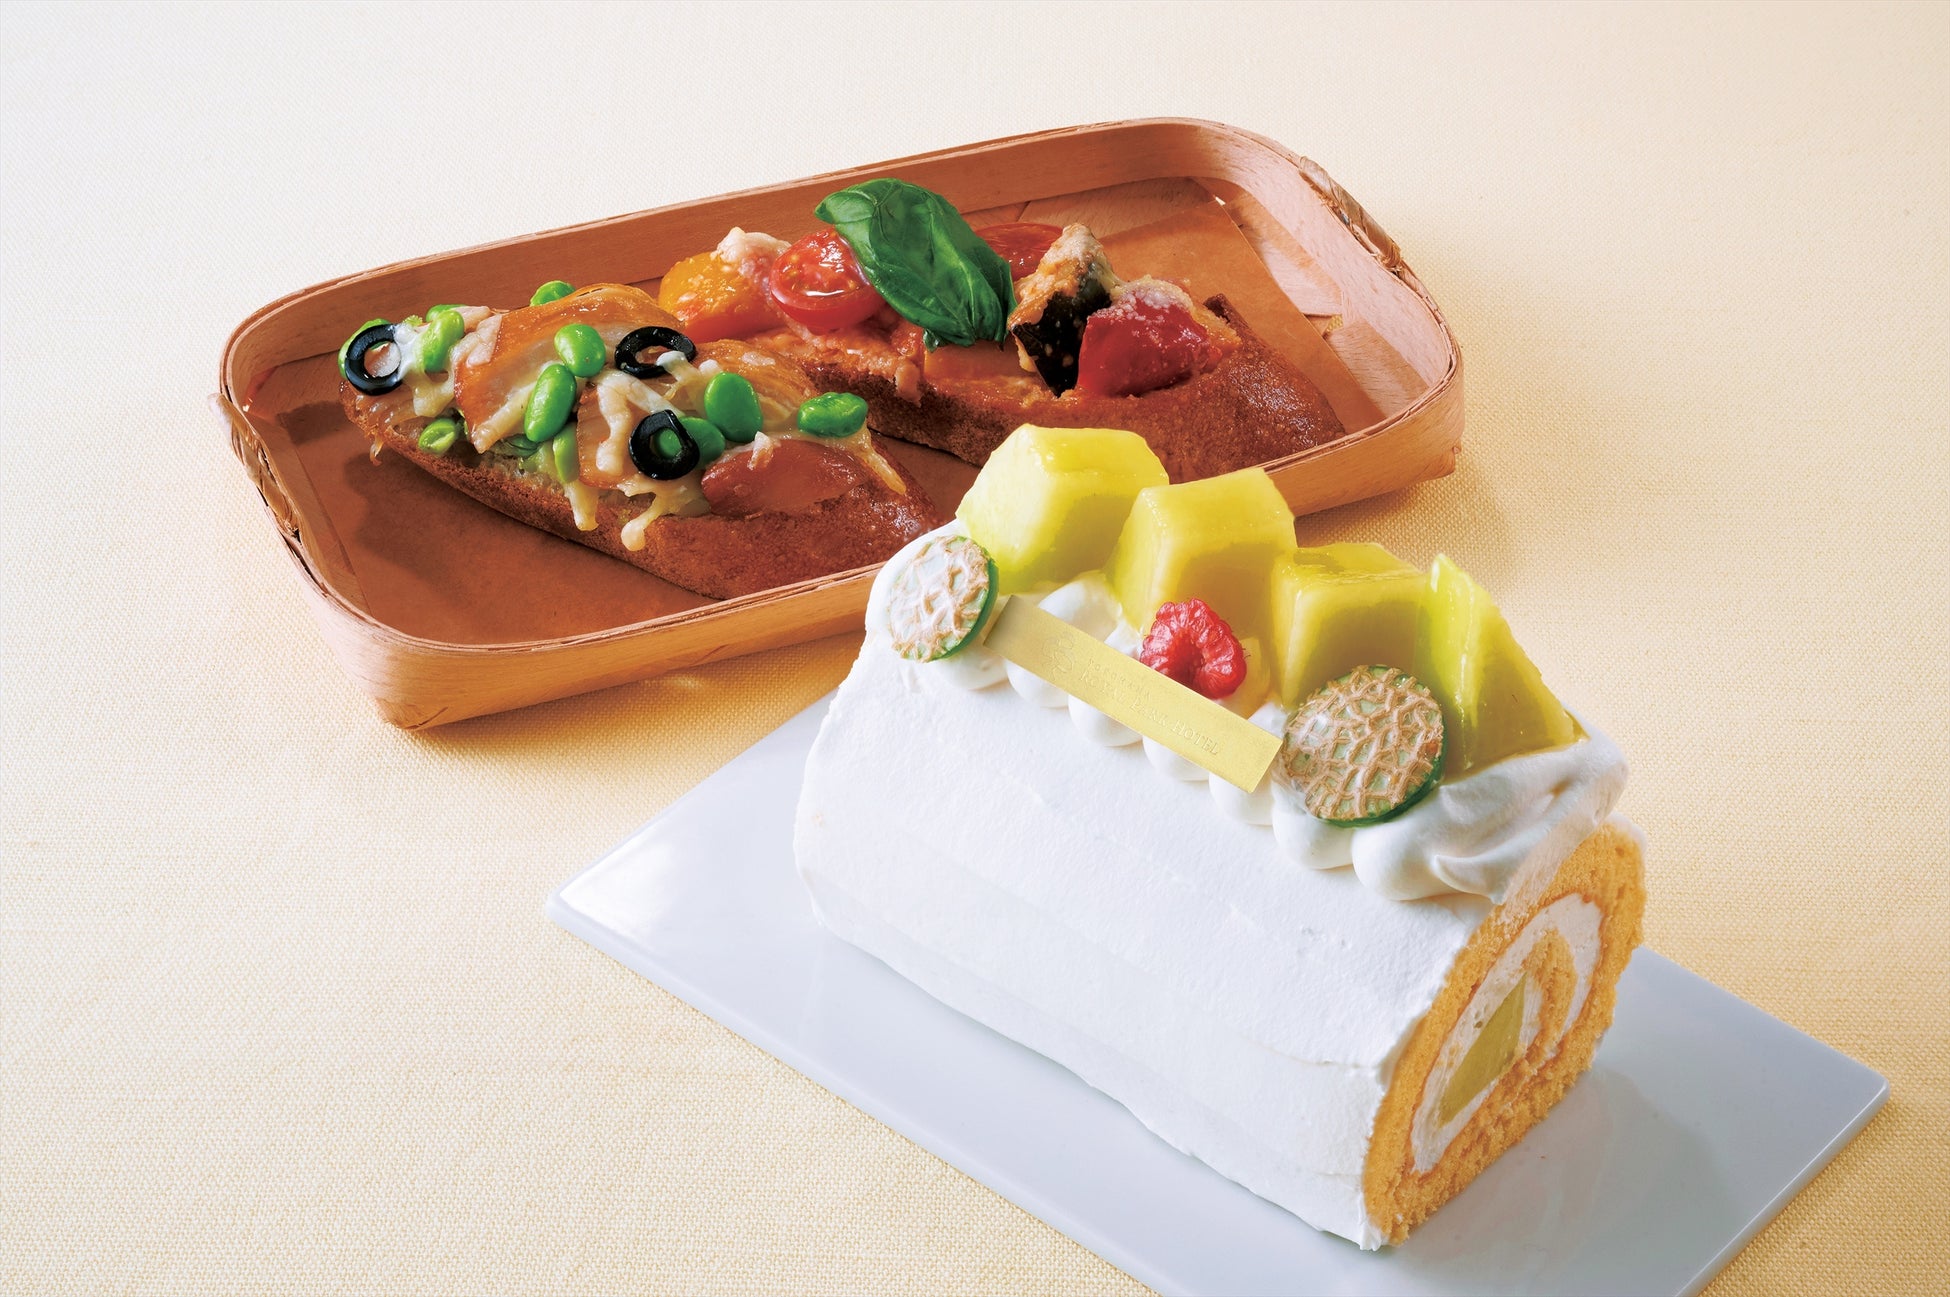 【横浜ロイヤルパークホテル】“初夏の美食”を味わうランチコース販売